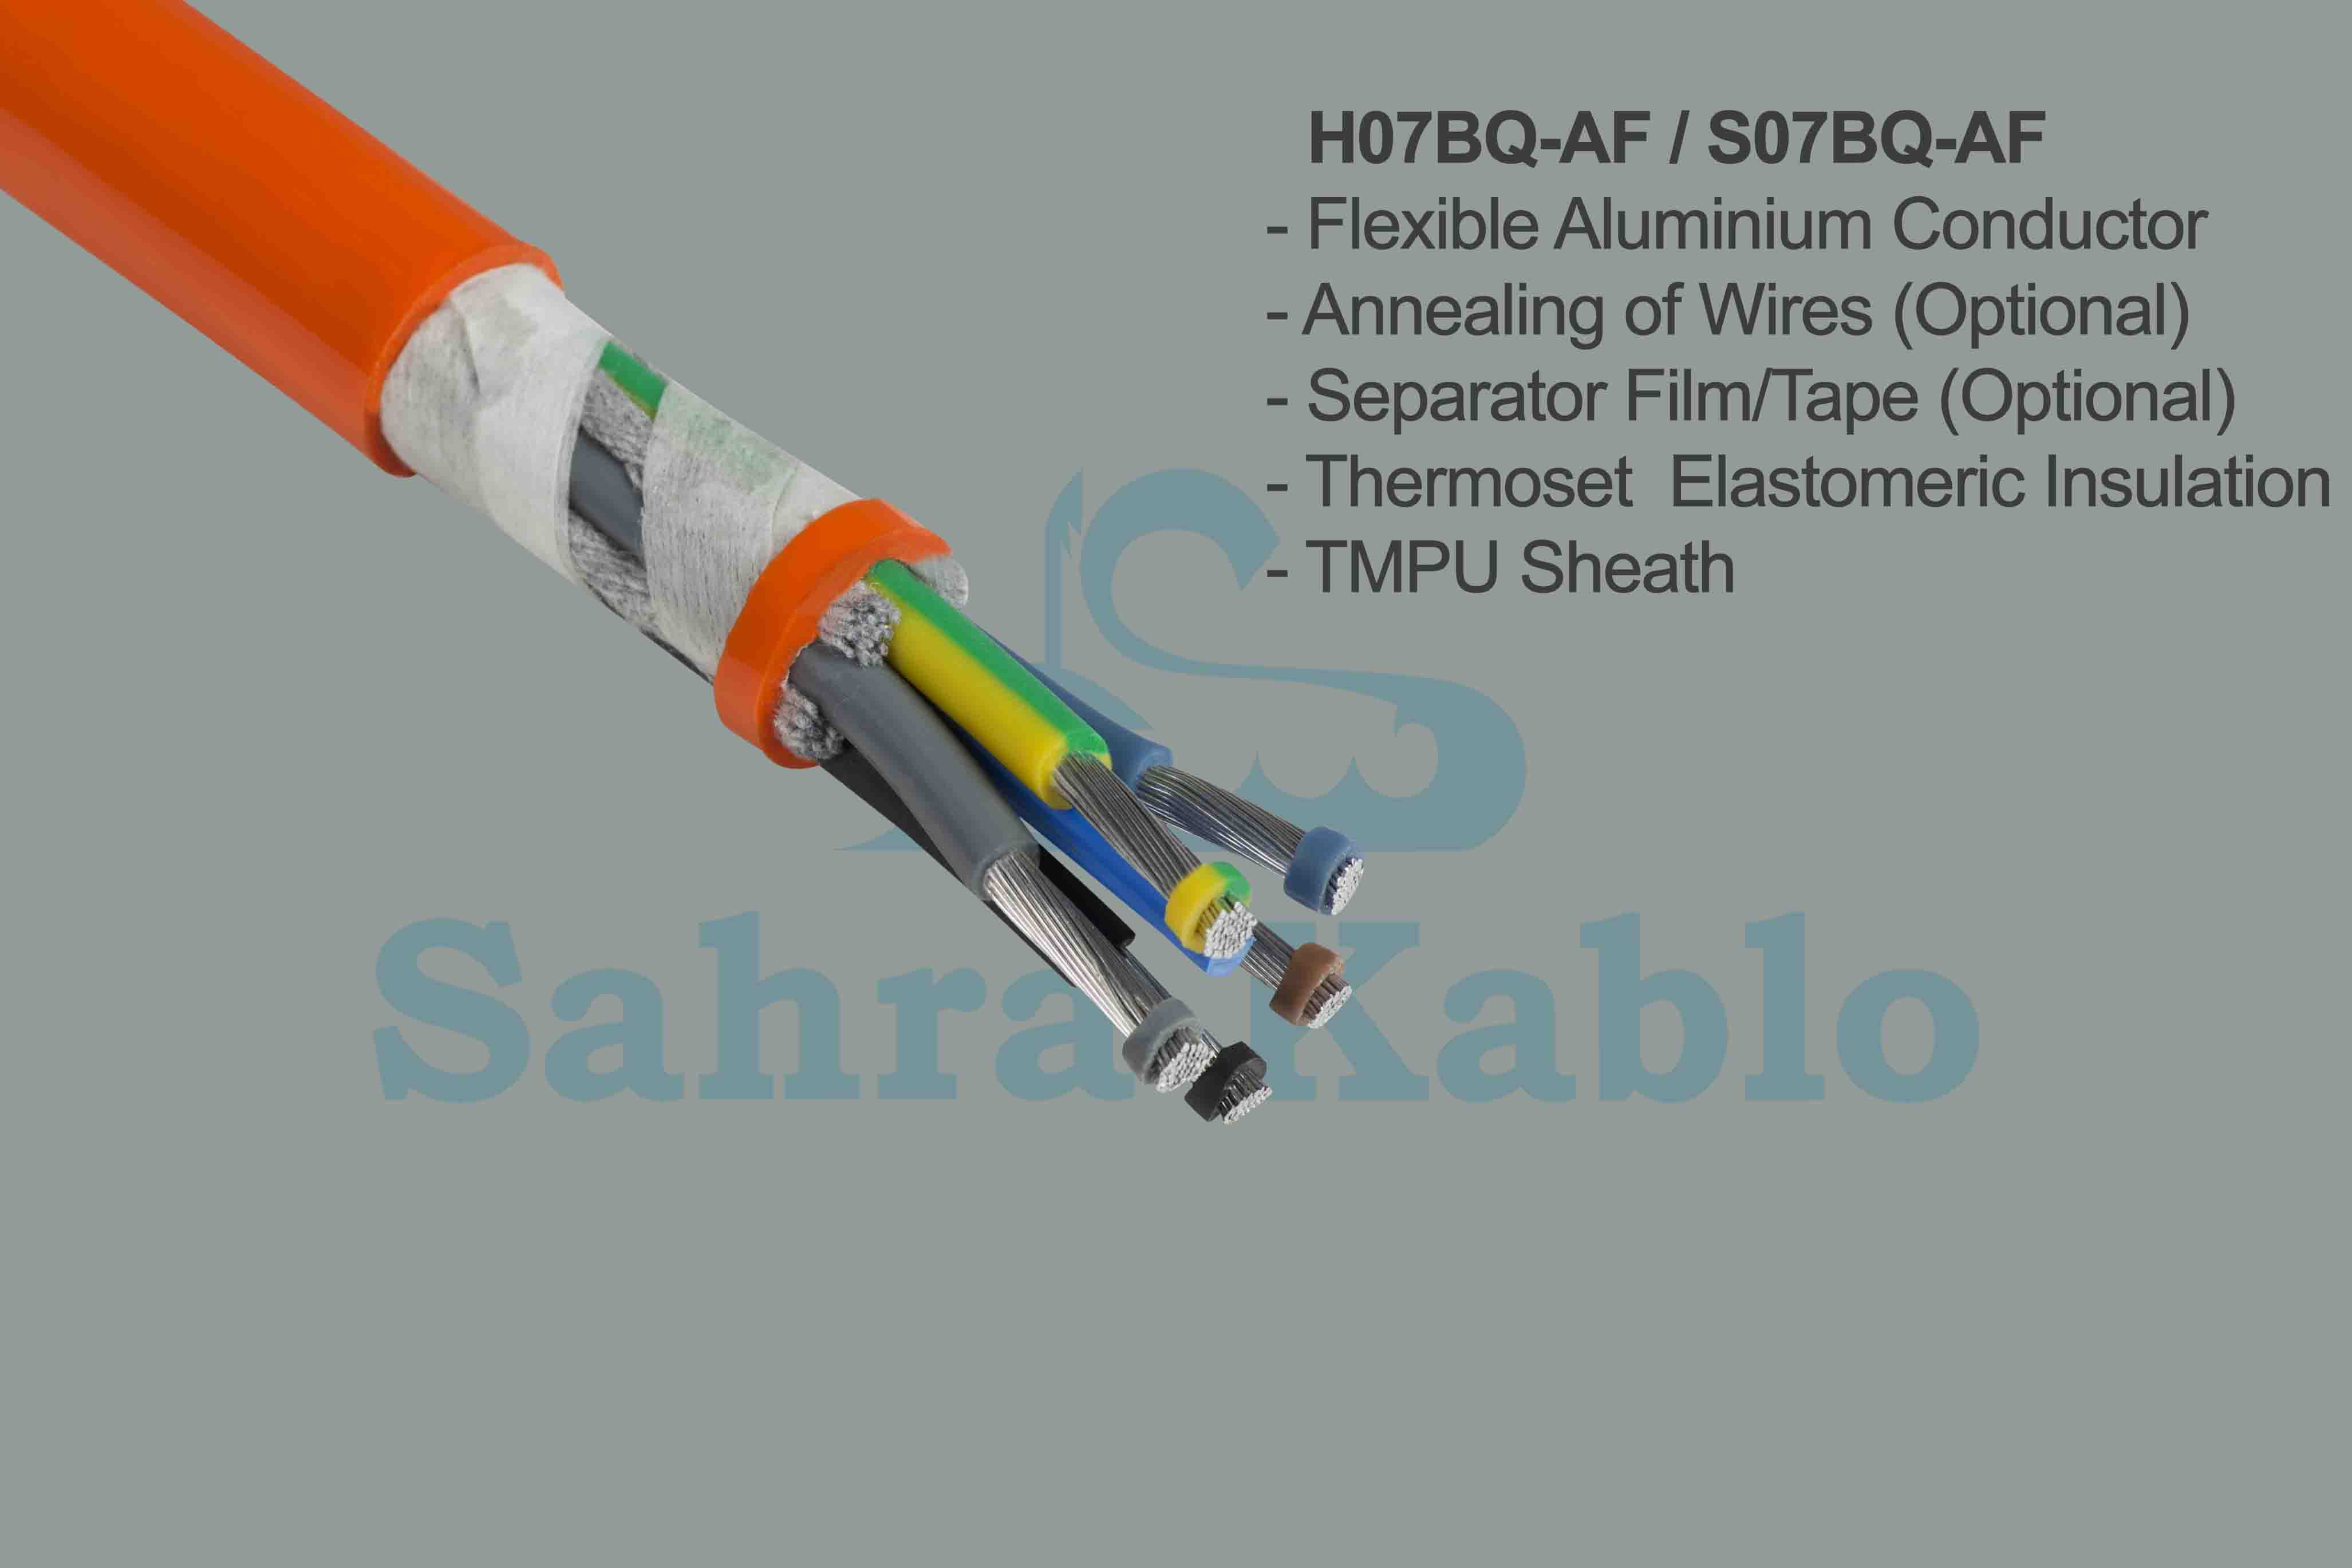 H07BQ-AF / S07BQ-AF Aluminium flexbile cable (class 5)